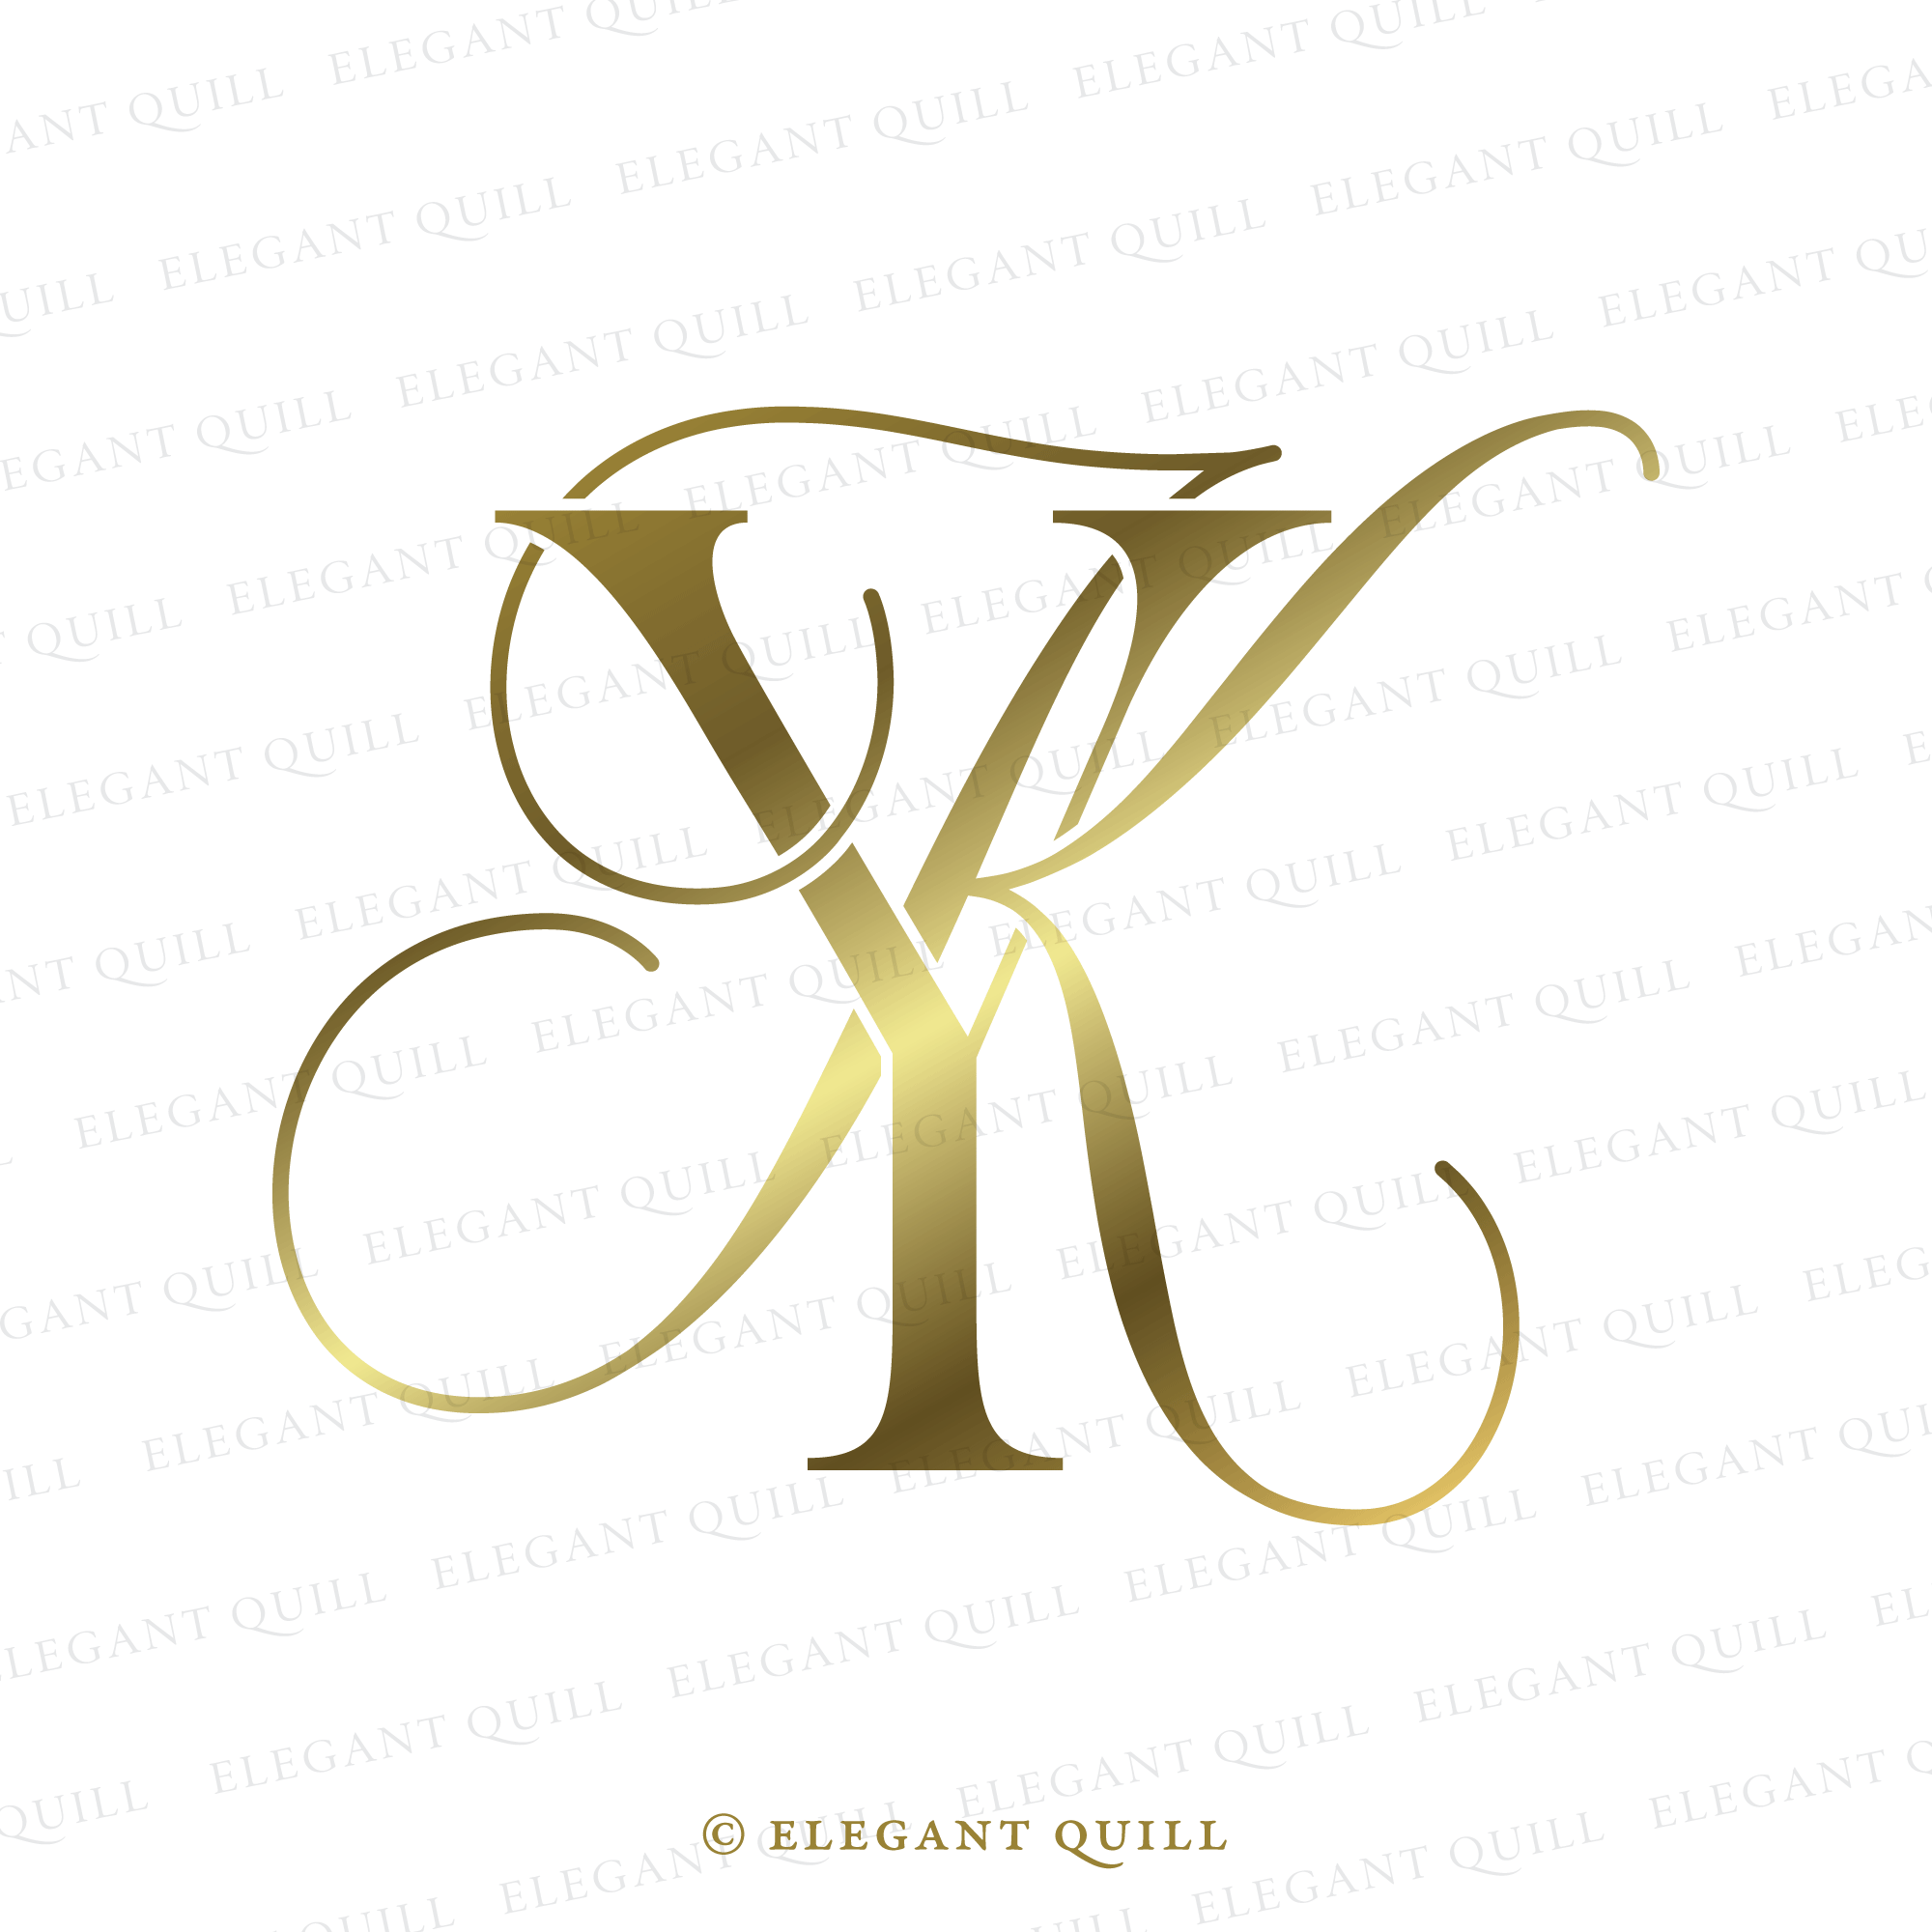 K V Vintage Initials Logo Symbol Stock Vector (Royalty Free) 501236890 |  Shutterstock | Initials logo, Initials, Hand tattoos for girls